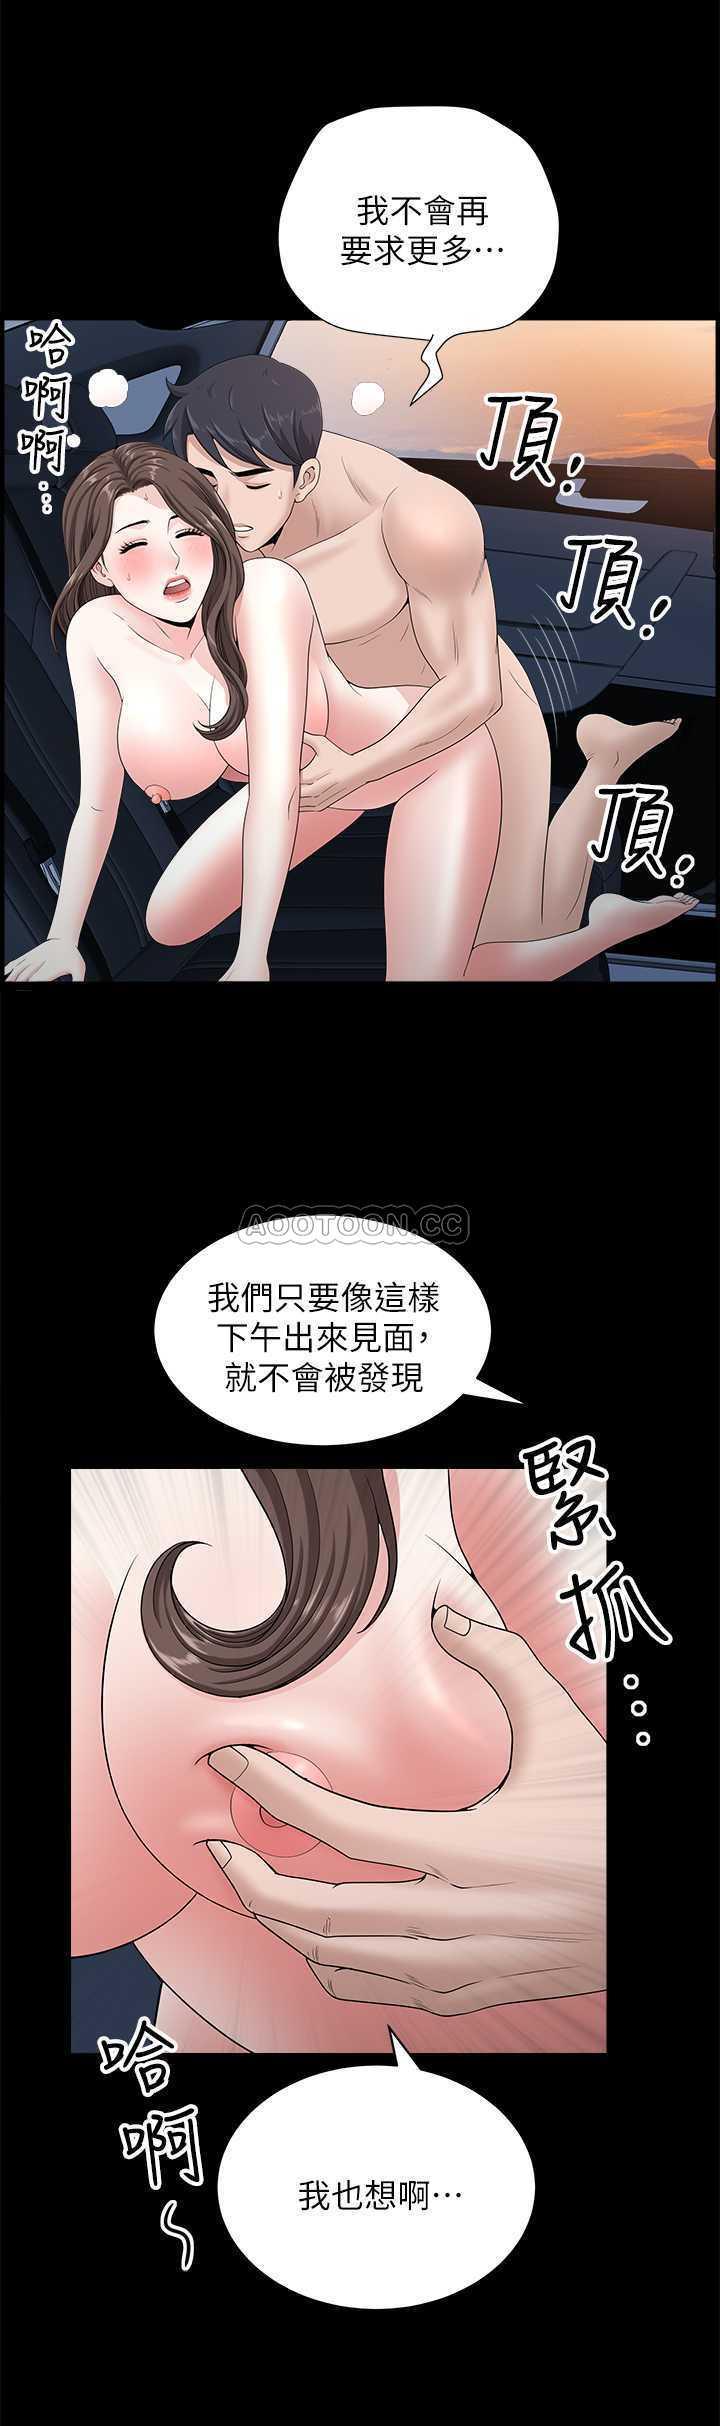 韩国污漫画 雙妻生活 第17话 24